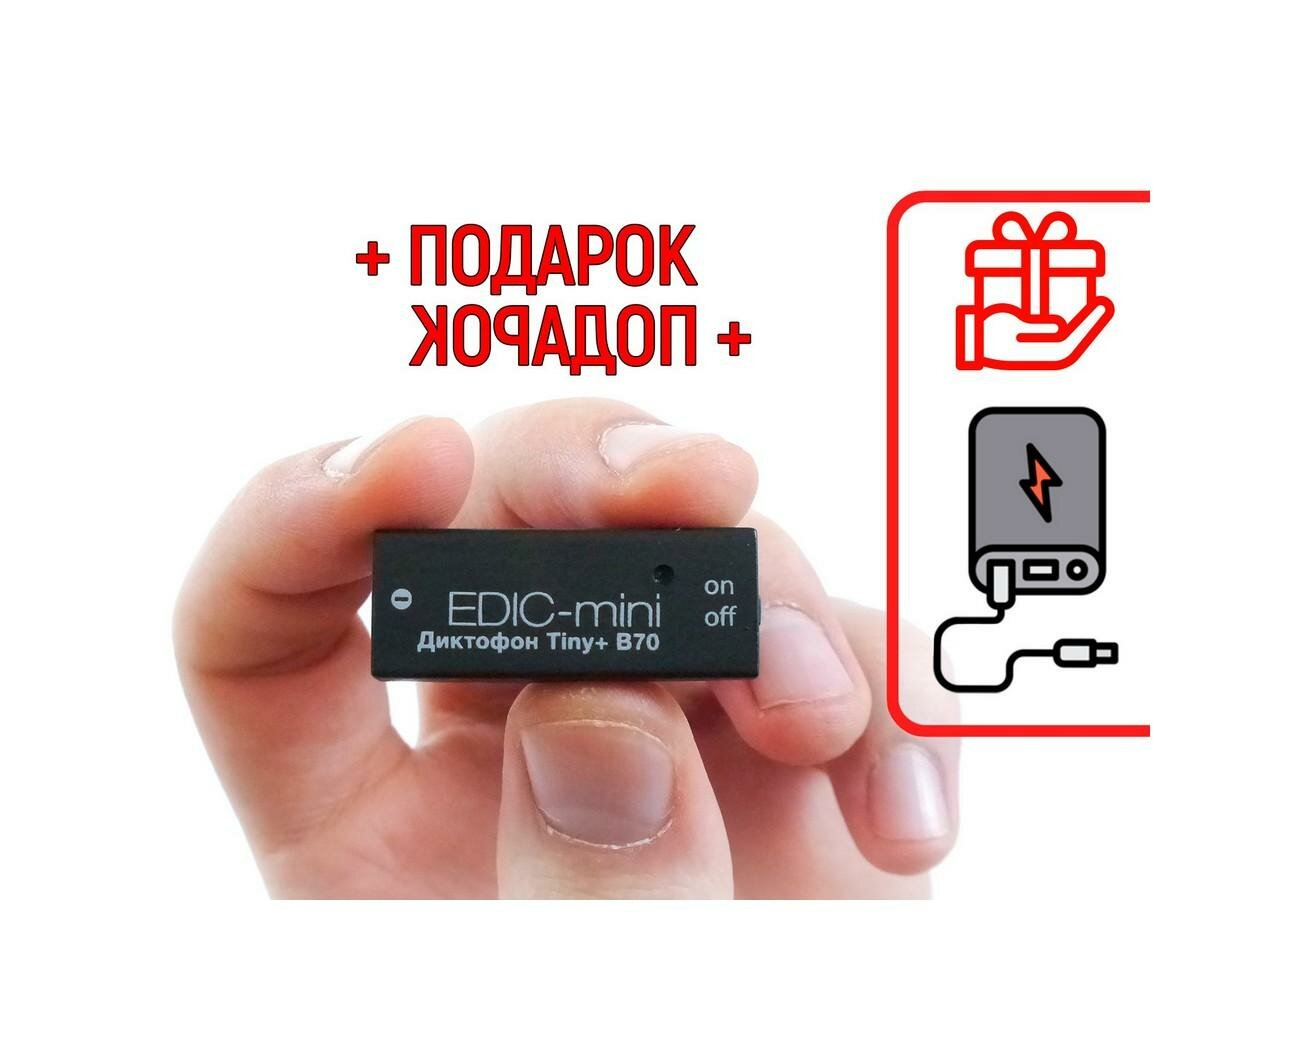 Цифровой мини диктофон Эдик-mini TINY mod: B70-150HQ (O43759DI) + подарок (Power-bank 10000 mAh) - автономная работа от аккумулятора до 150 часов - уд